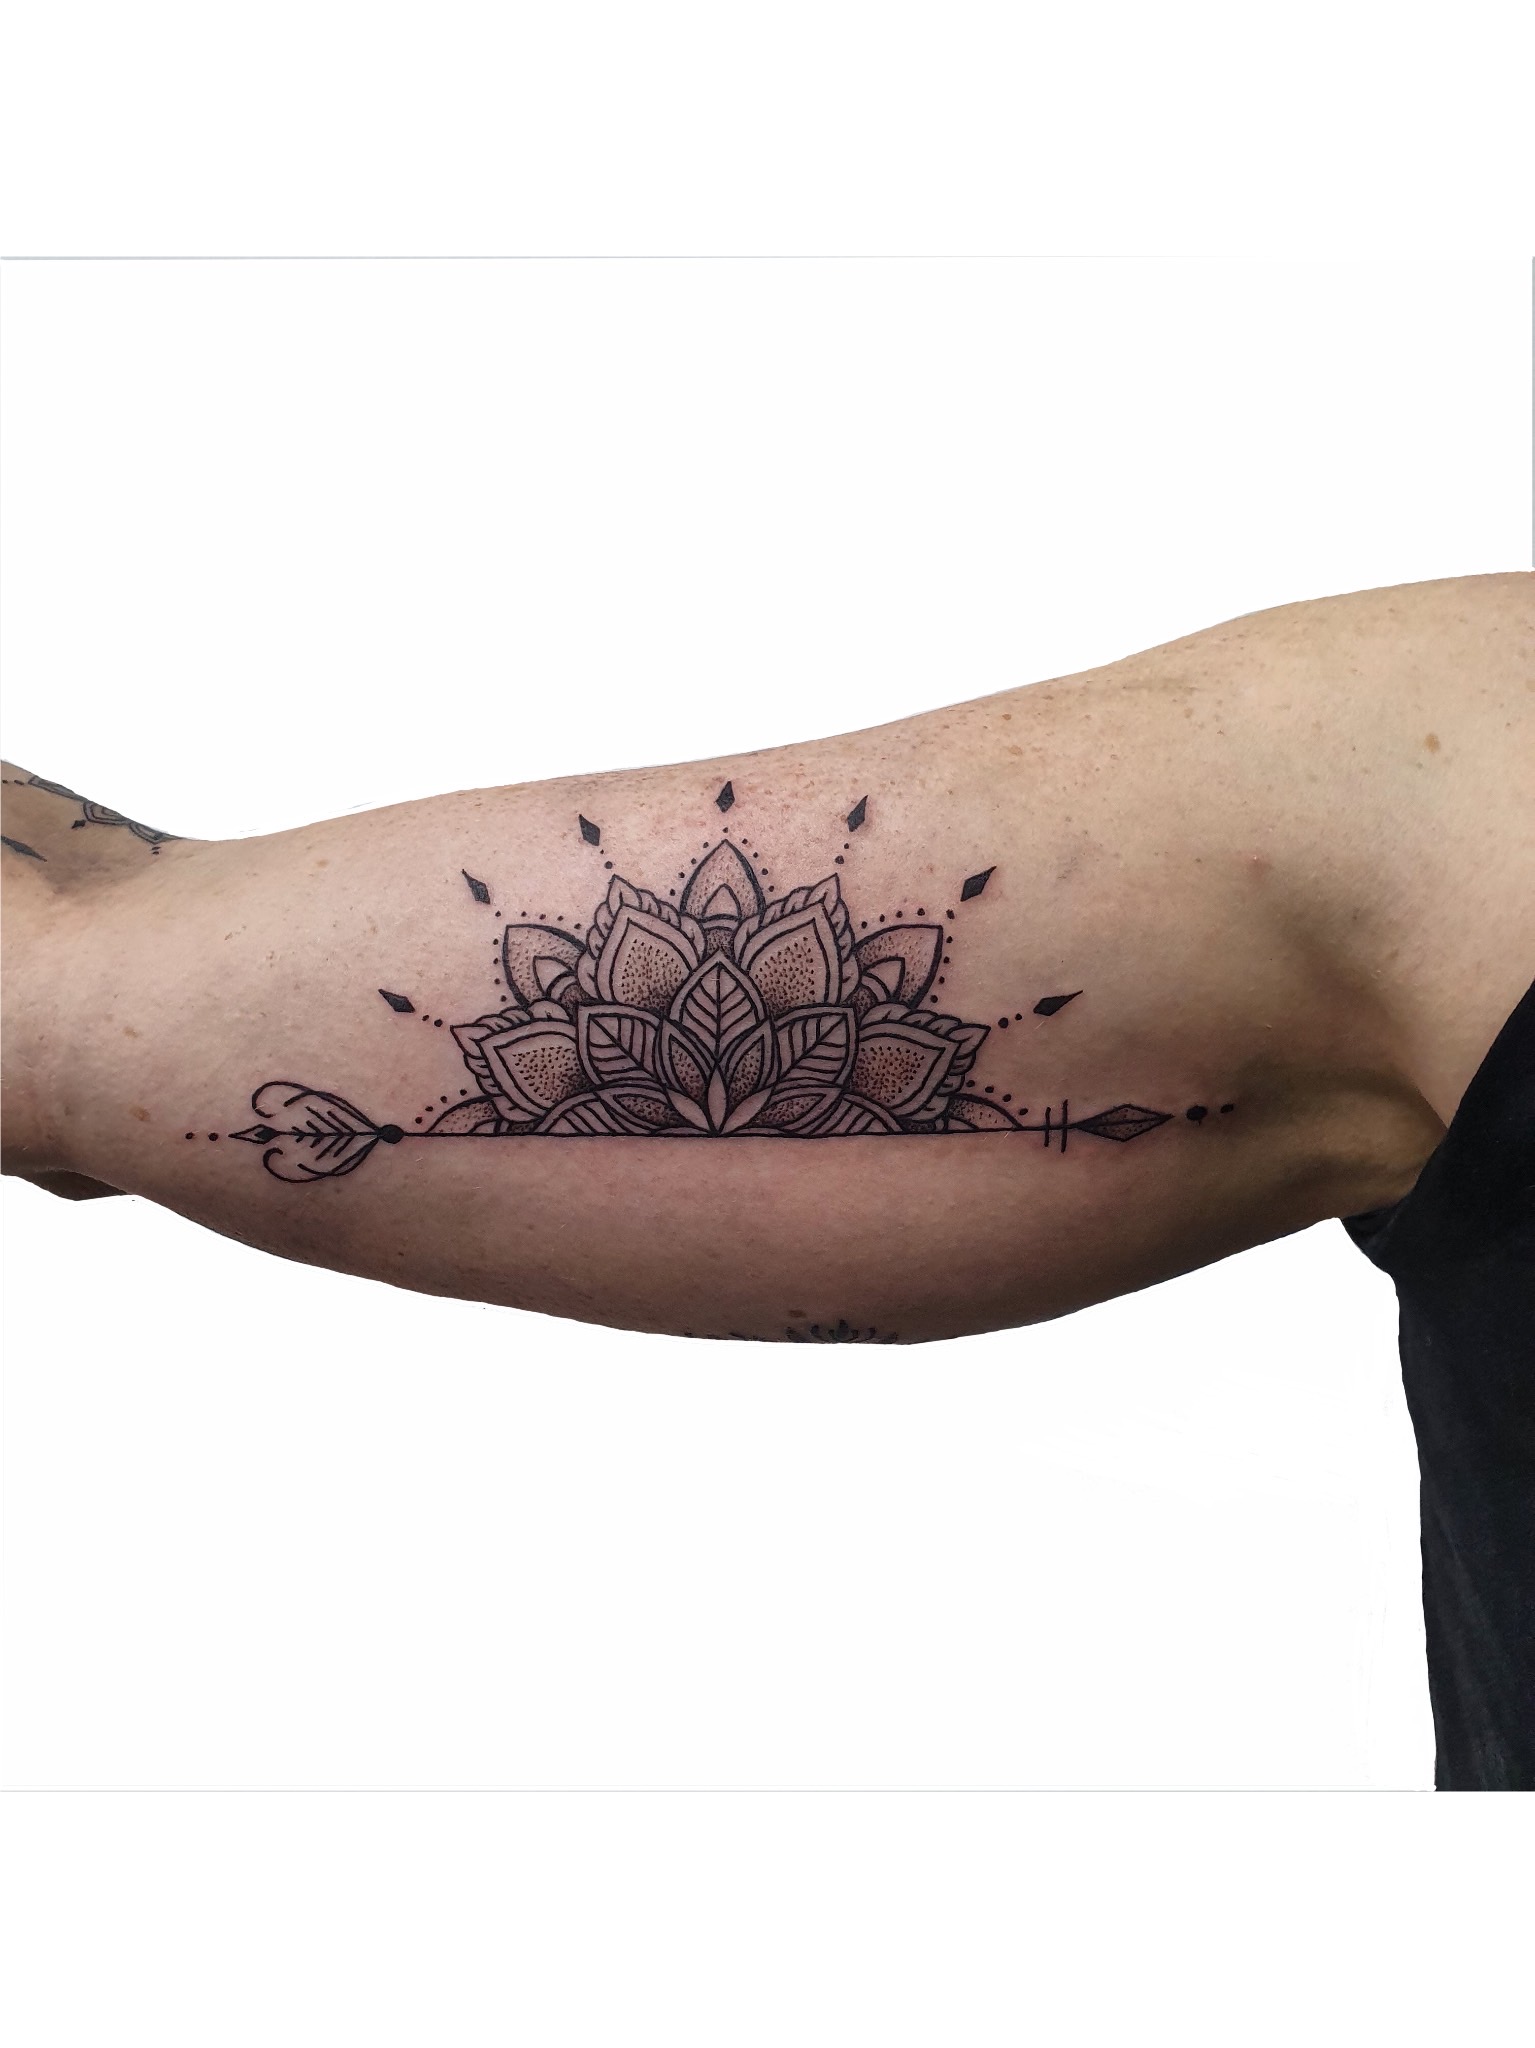 Petra Mandala Geometry geometric tattoo hand poke primitive tattoo tribal  best tattoo shop studio in perth script  -  Primitive Tattoo